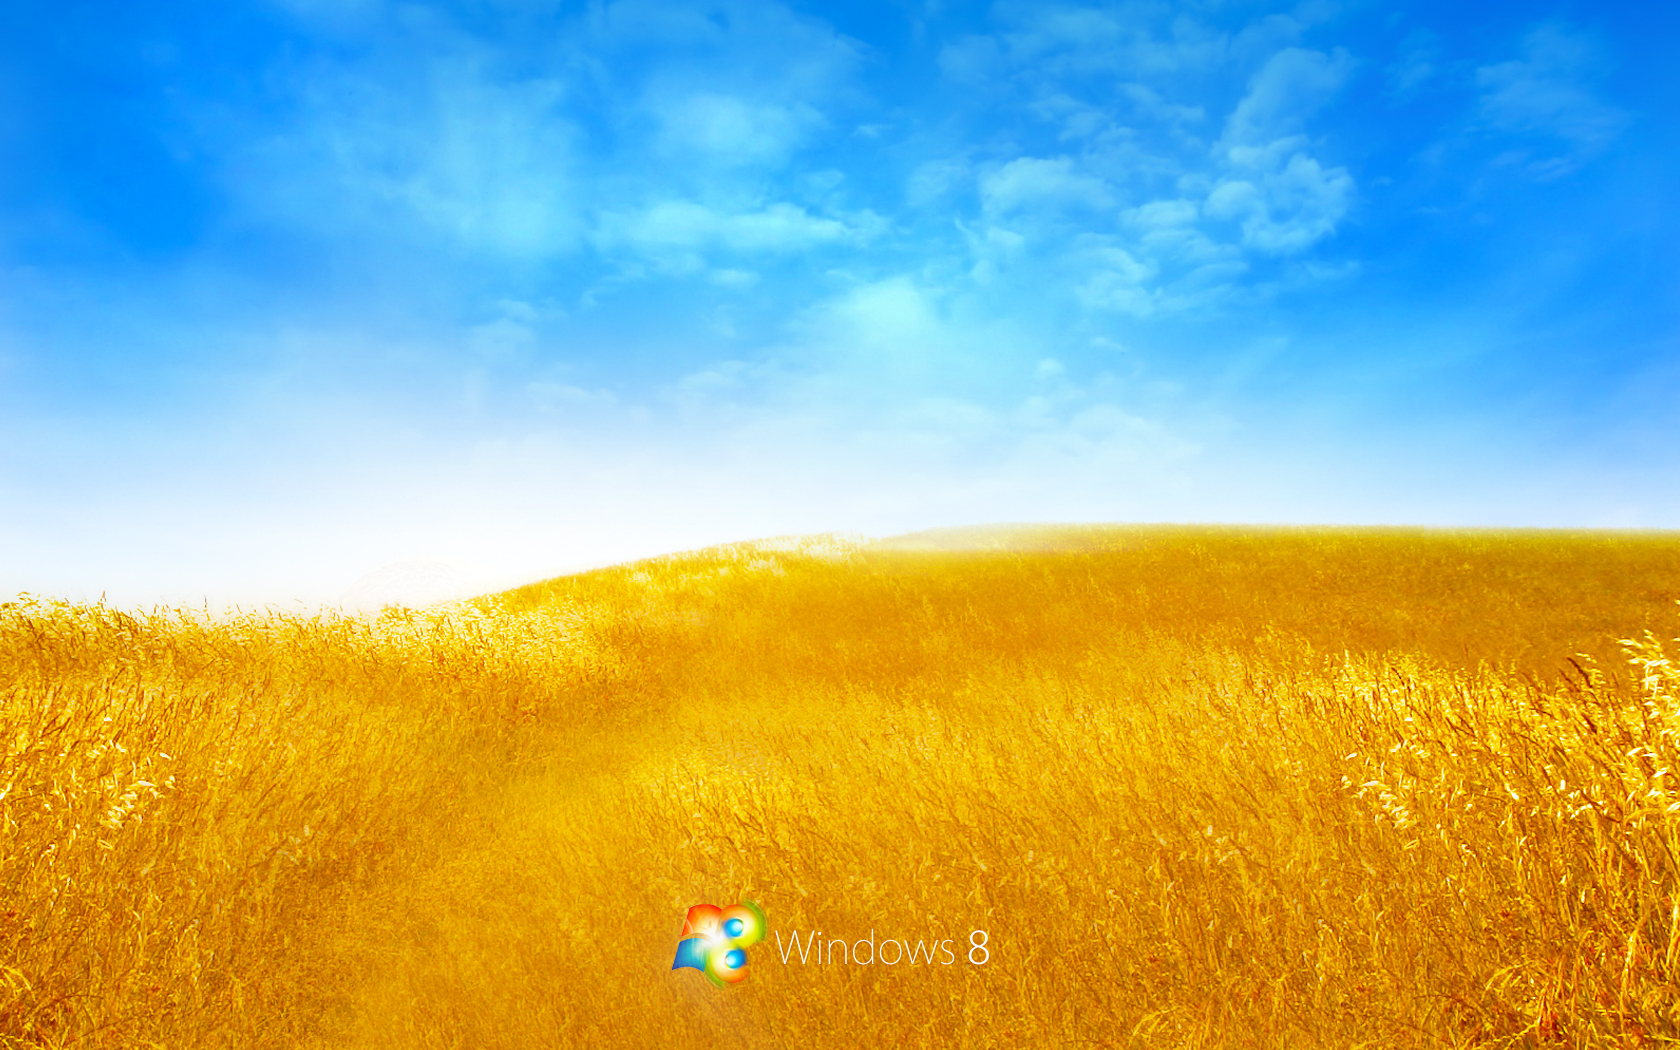 Windows Bliss Desktop Pc And Mac Wallpaper